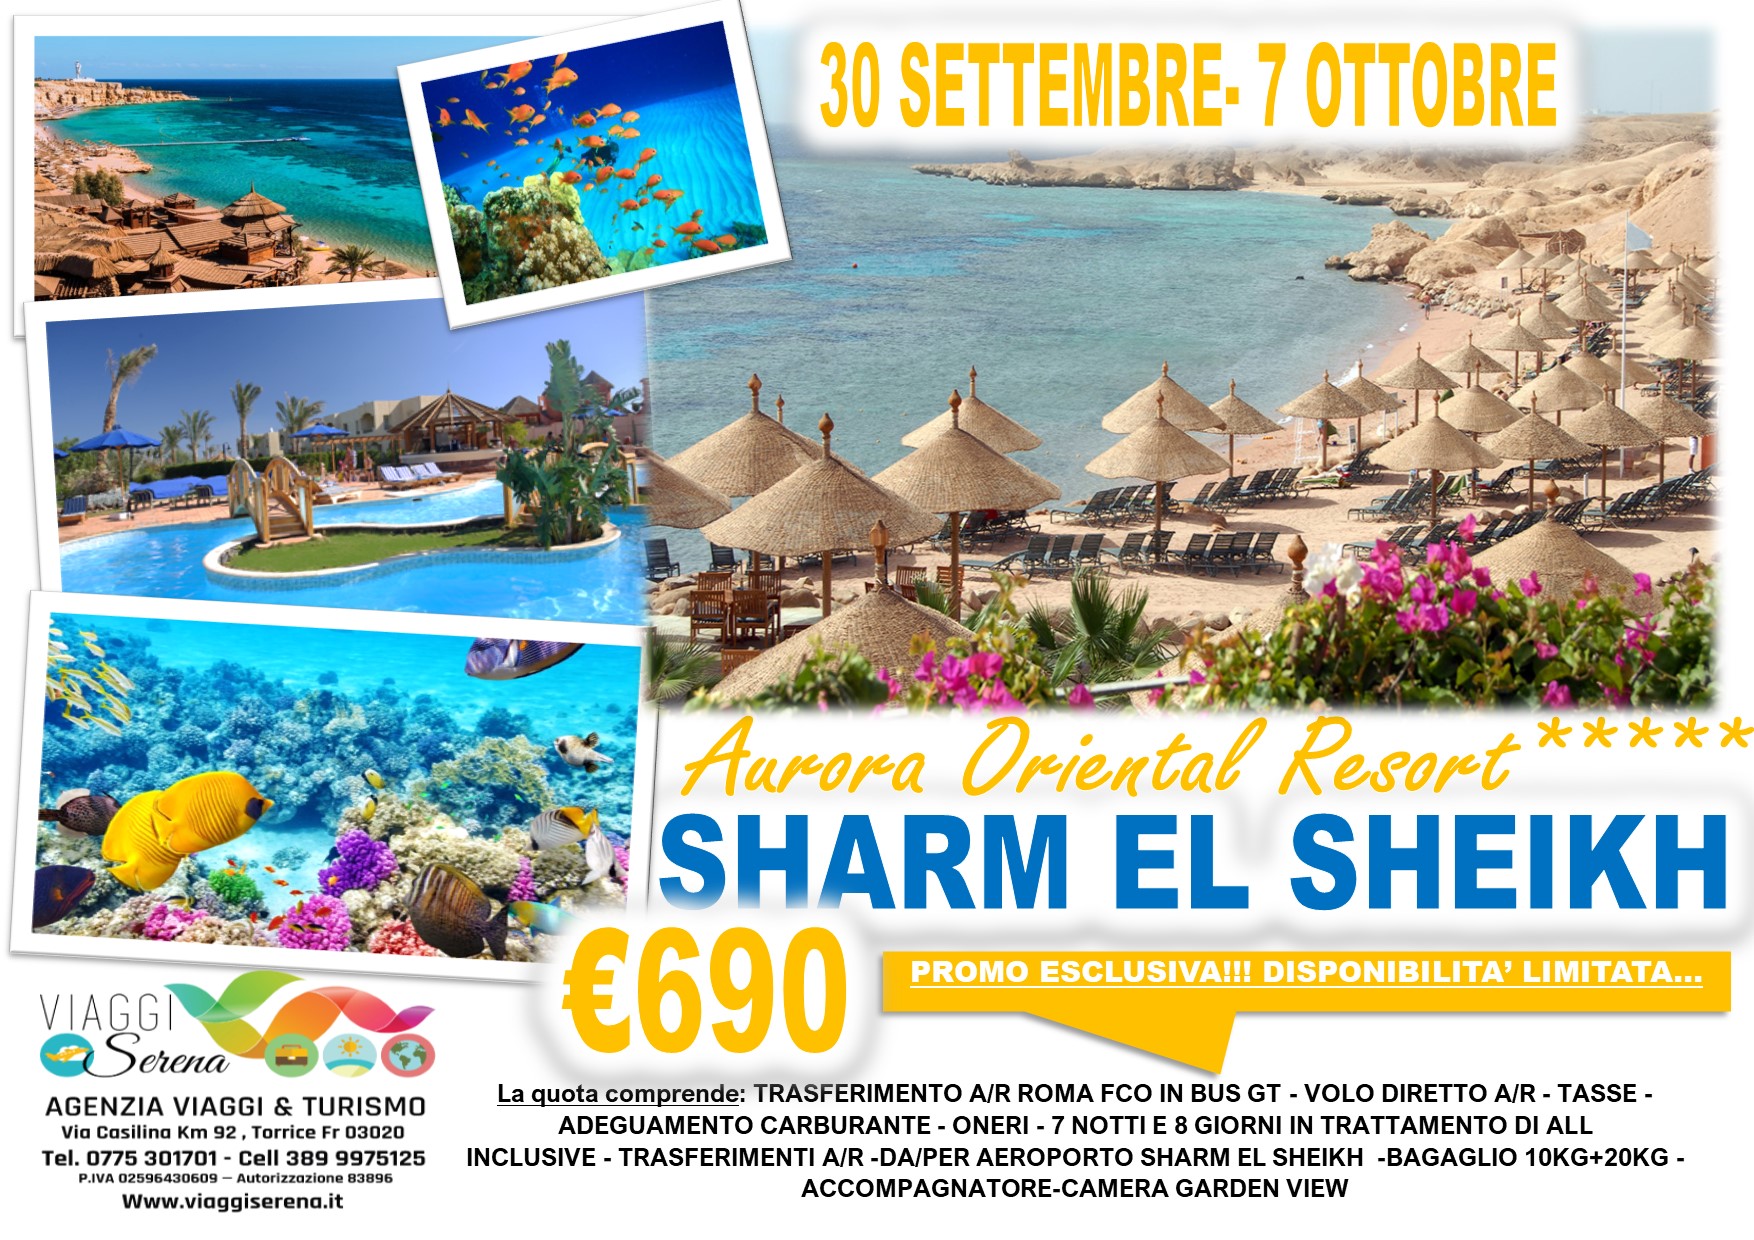 Viaggi di Gruppo: SHARM EL SHEIKH villaggio Aurora Oriental Resort 30 Settembre- 7 Ottobre € 690,00